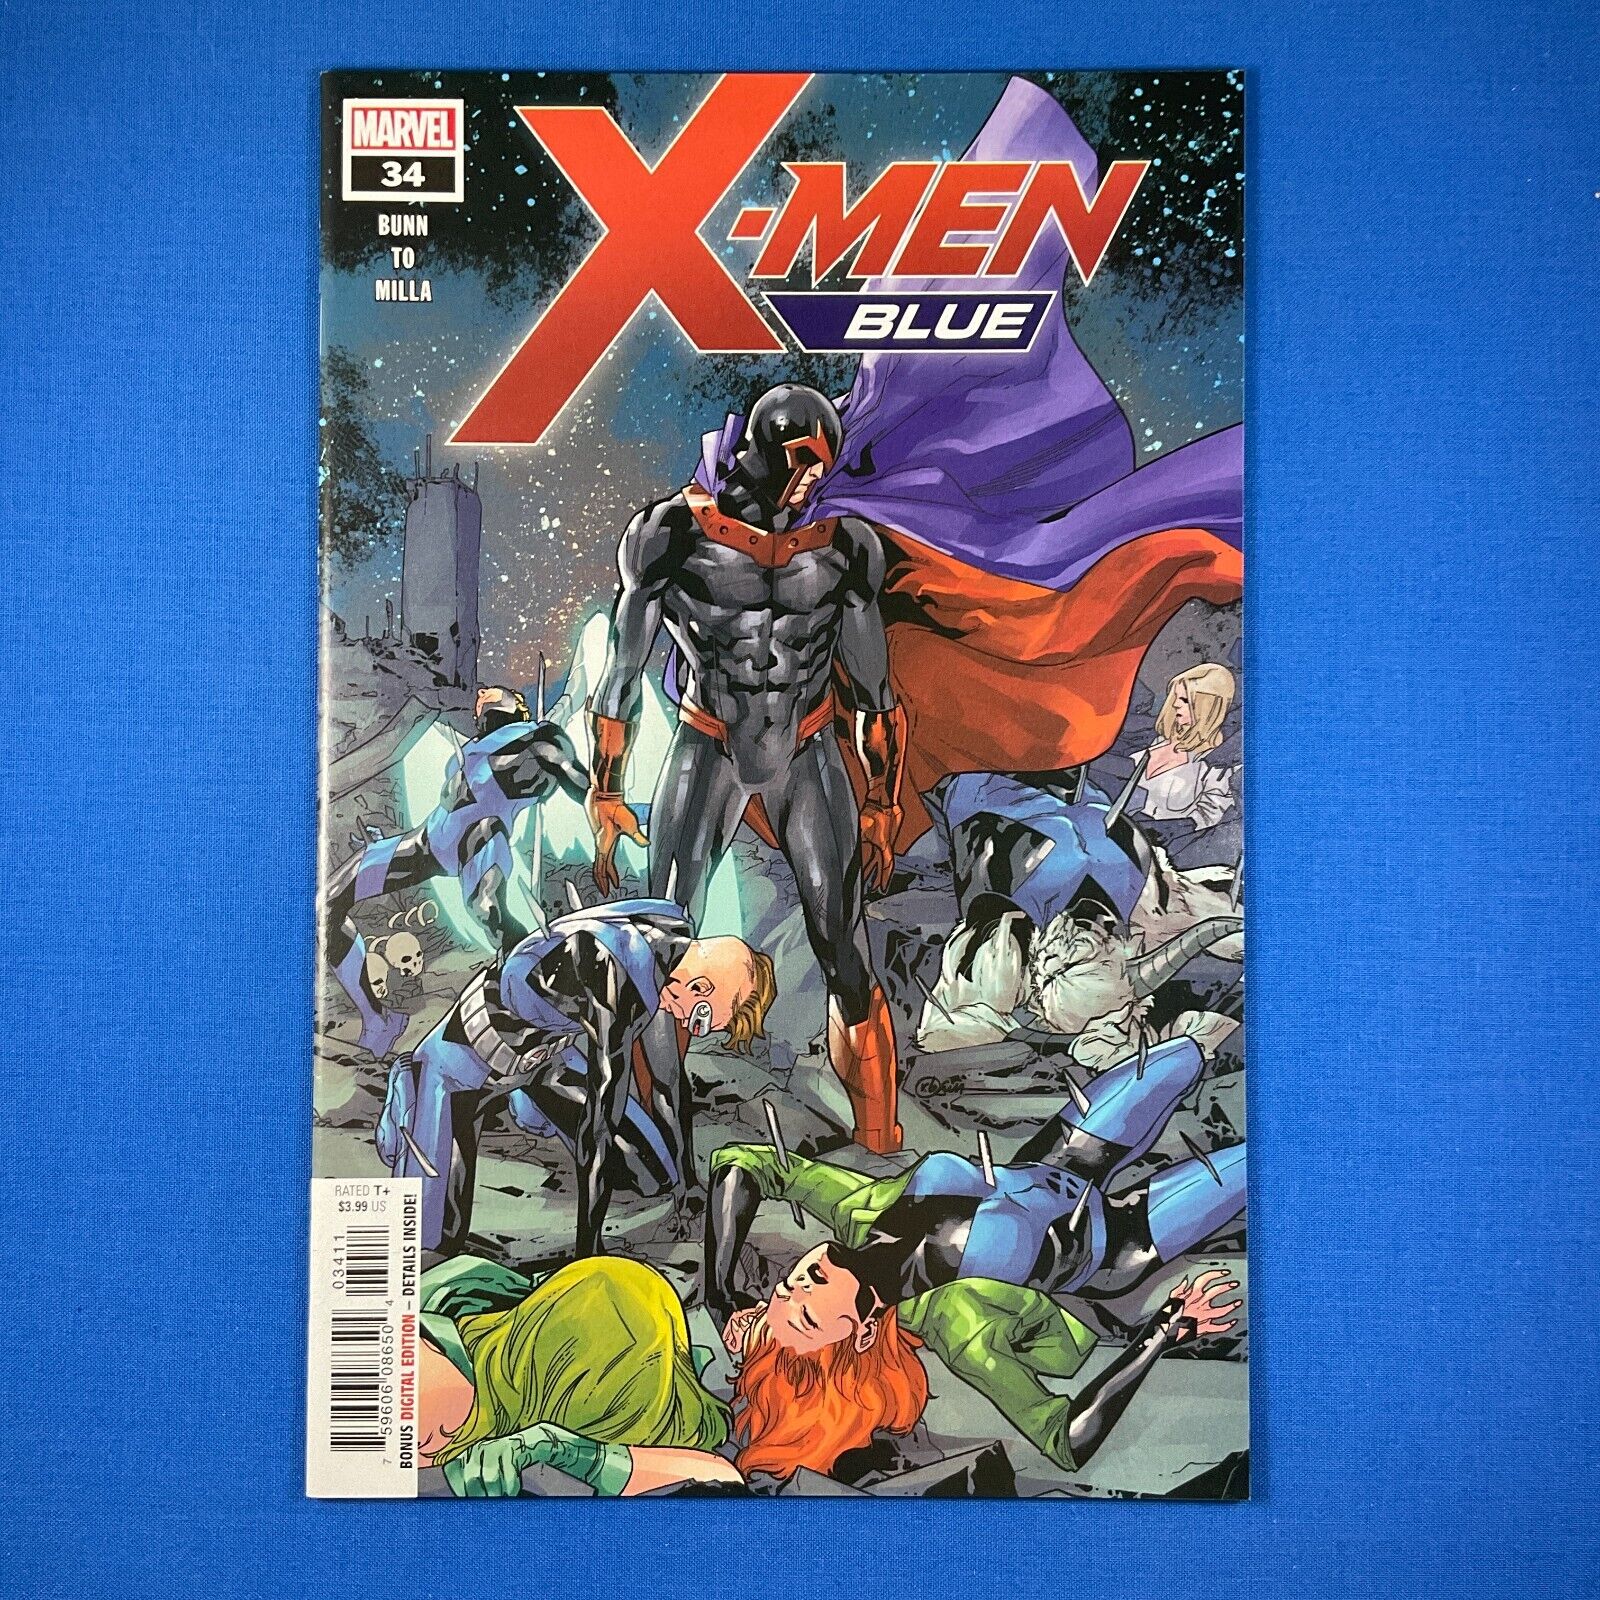 X-Men Blue #34 Surviving the Experience Part 2 Marvel Comics 2018 Cover A